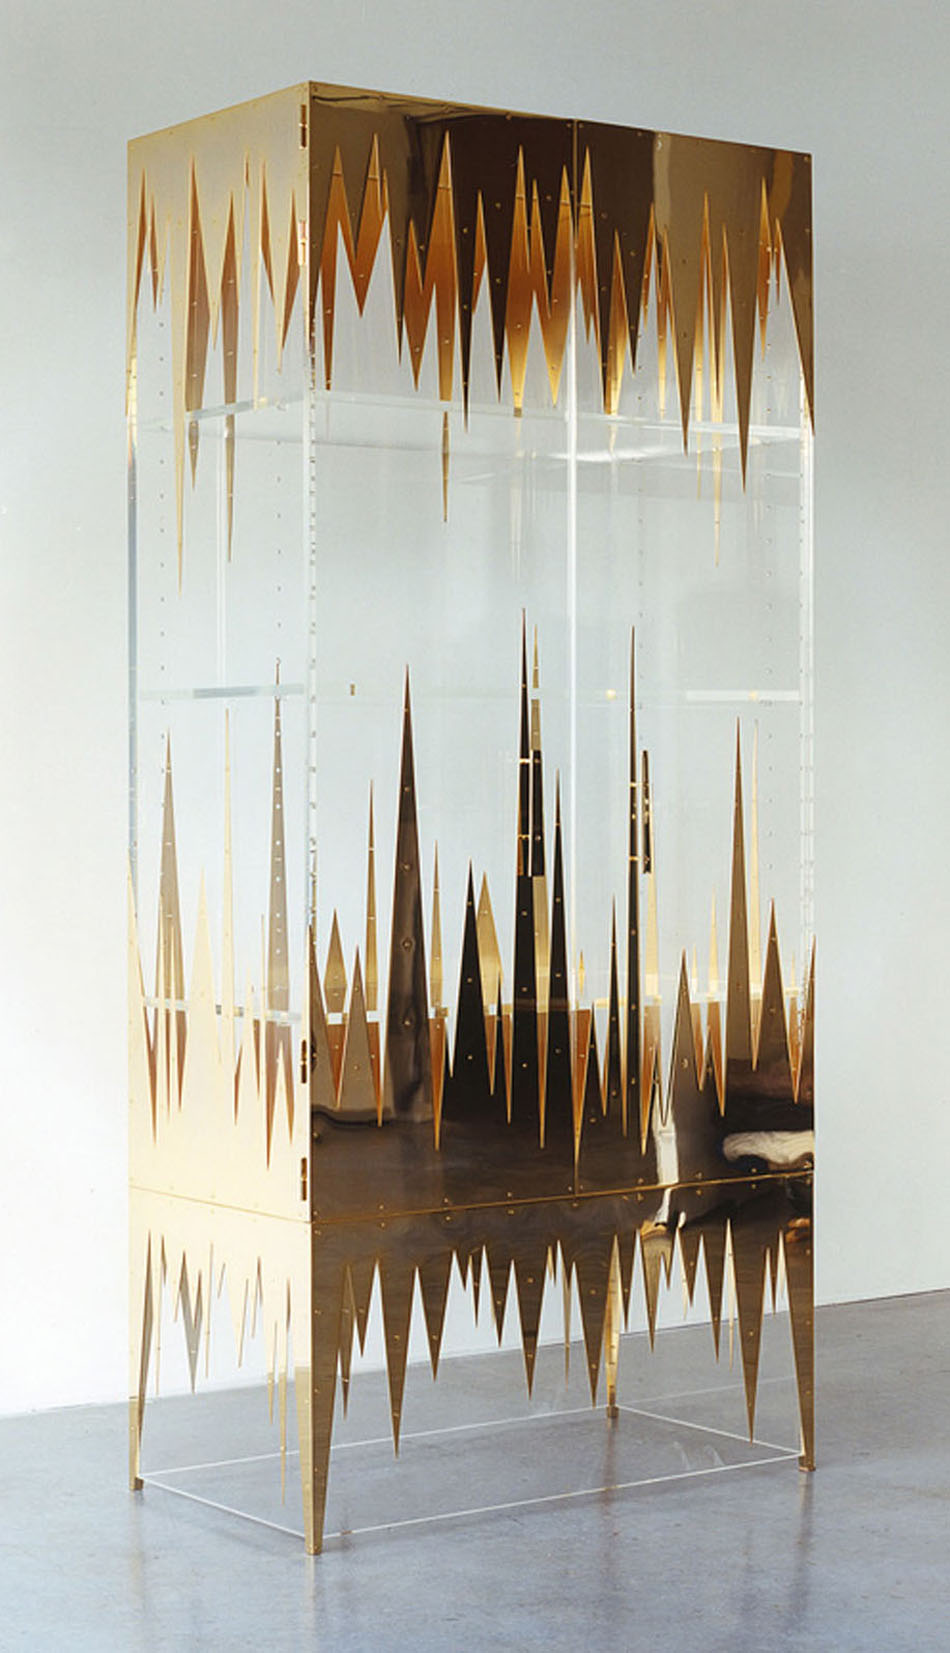 Mattia Bonetti "Frequency" cabinet